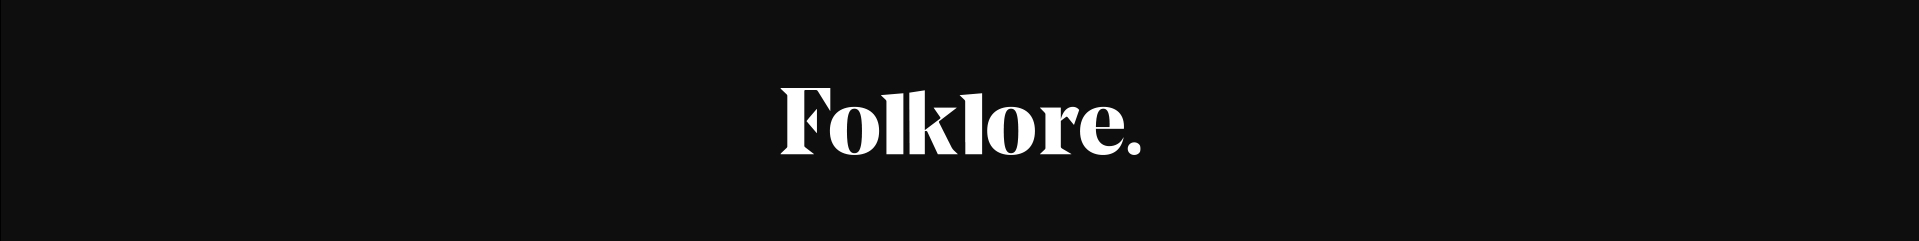 Folklore .'s profile banner